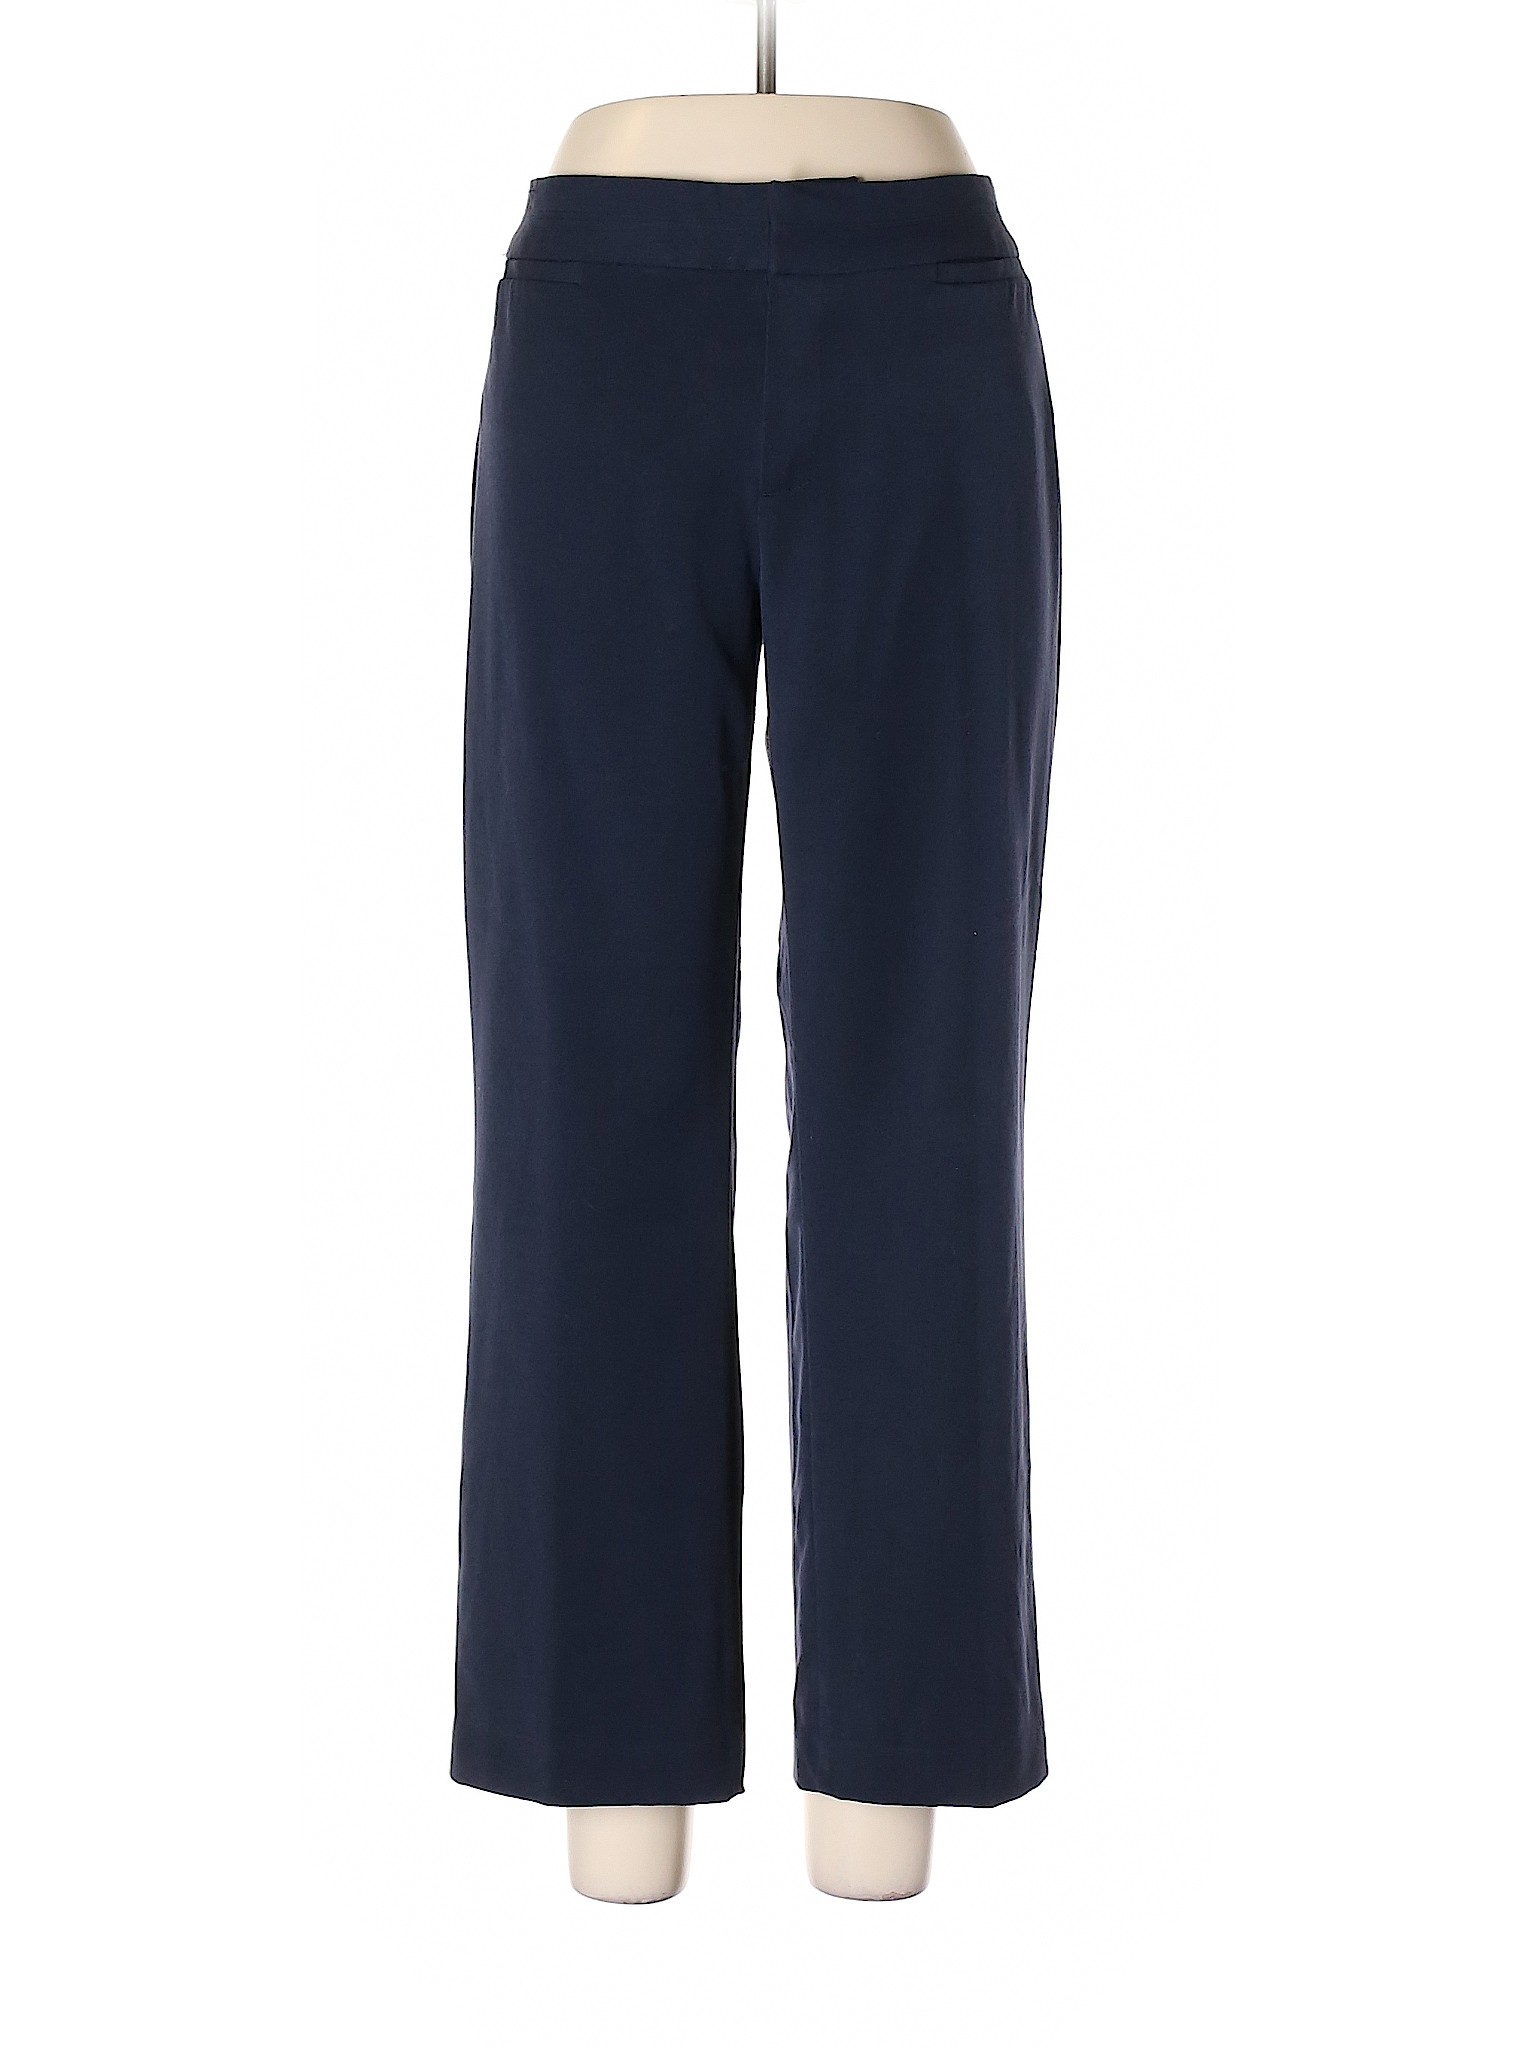 Unbranded Women Blue Dress Pants 10 | eBay